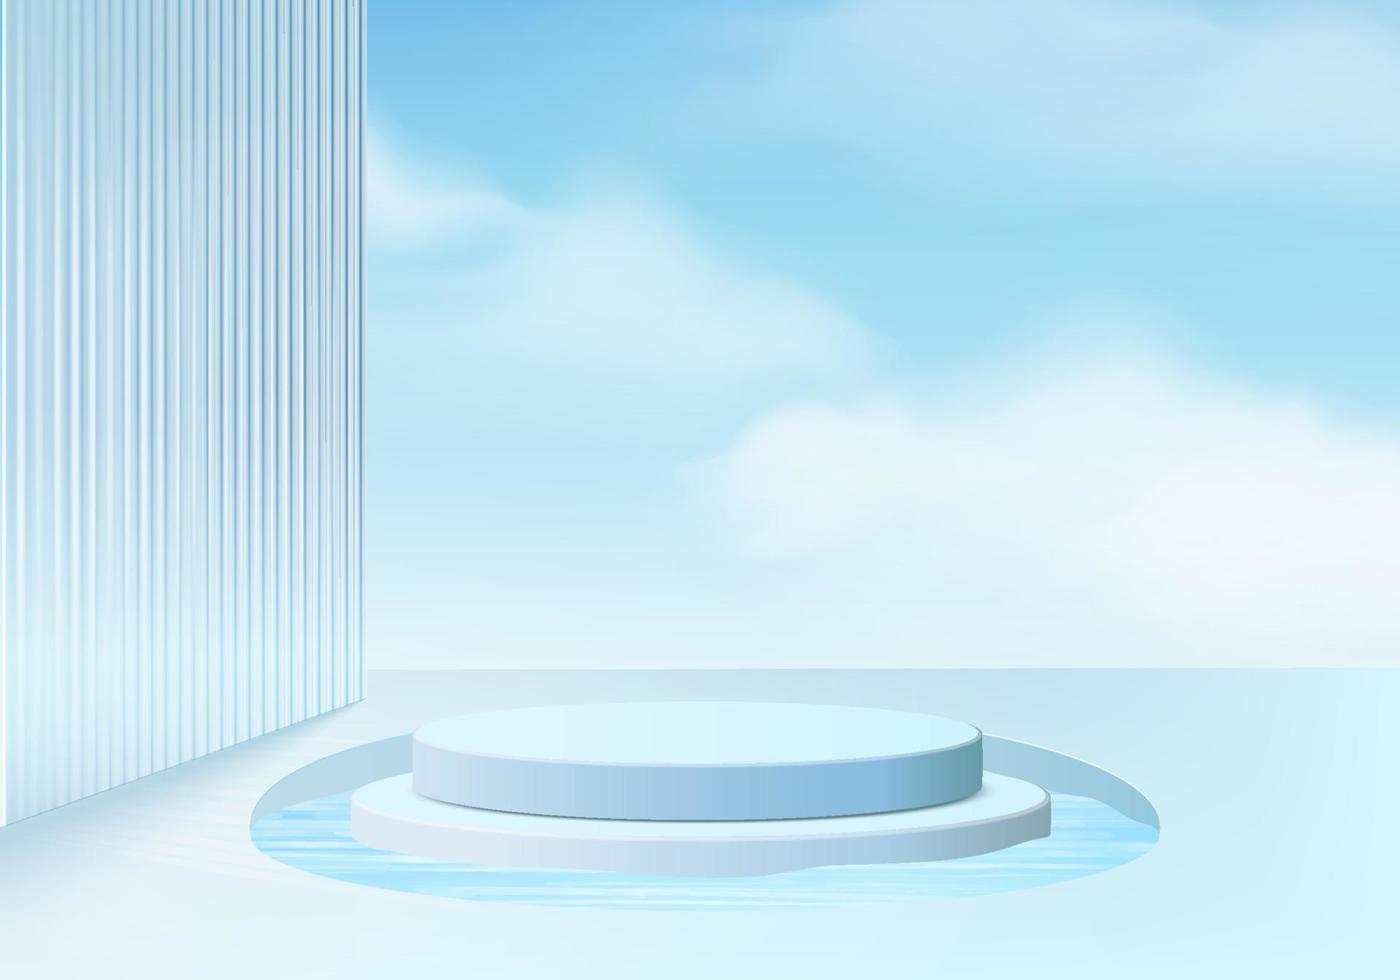 Plataforma de fundo 3D com vidro azul moderno. fundo do vetor plataforma de pódio de cristal de renderização 3d. estande mostrar produto cosmético. vitrine de palco em uma plataforma de estúdio de vidro moderno com pedestal